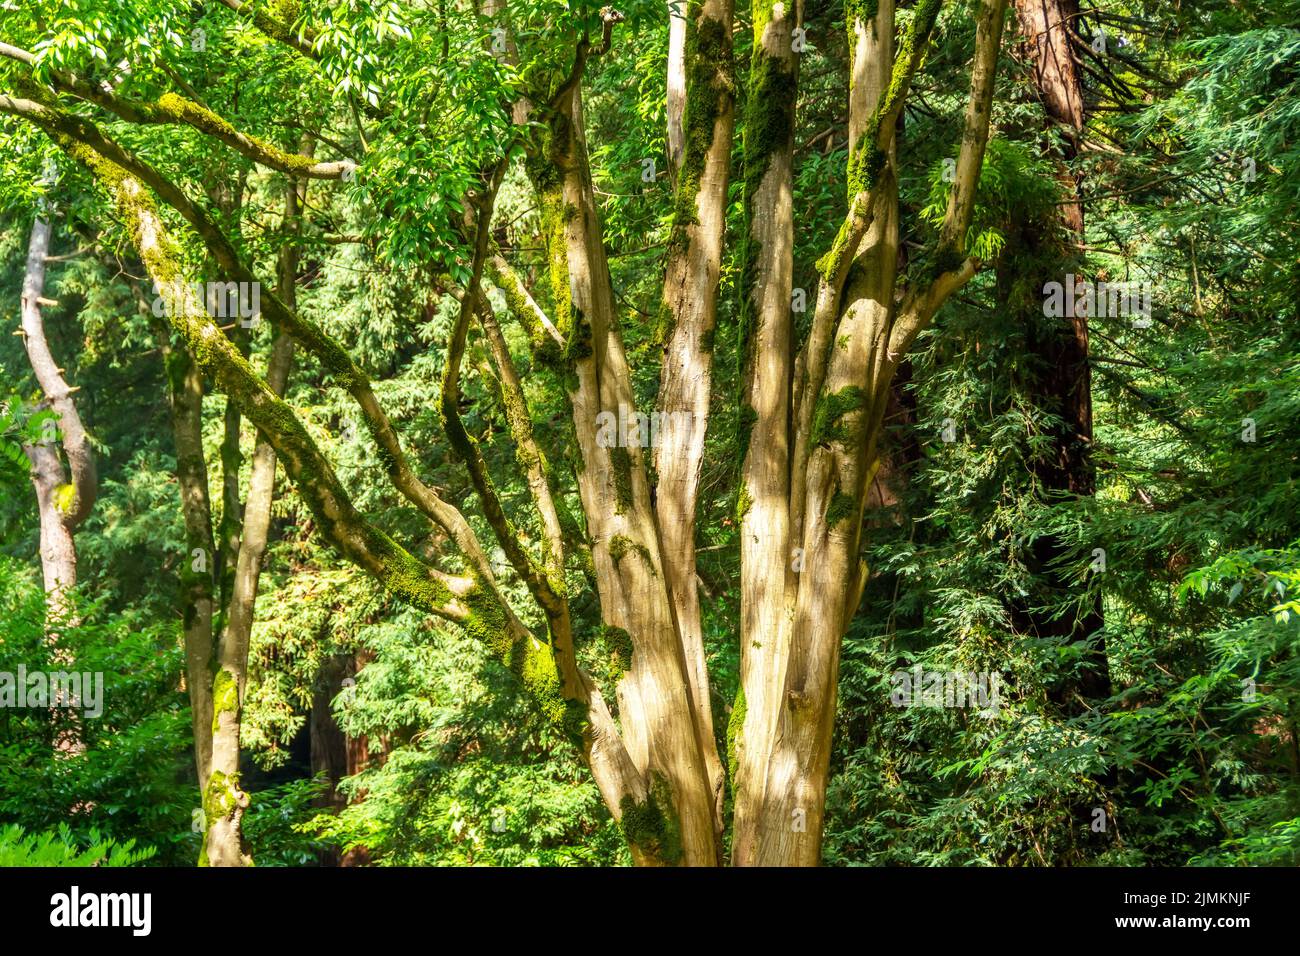 Un viejo árbol ramificado cubierto de musgo en un bosque sombrío y los rayos que caen del sol en el tronco Foto de stock